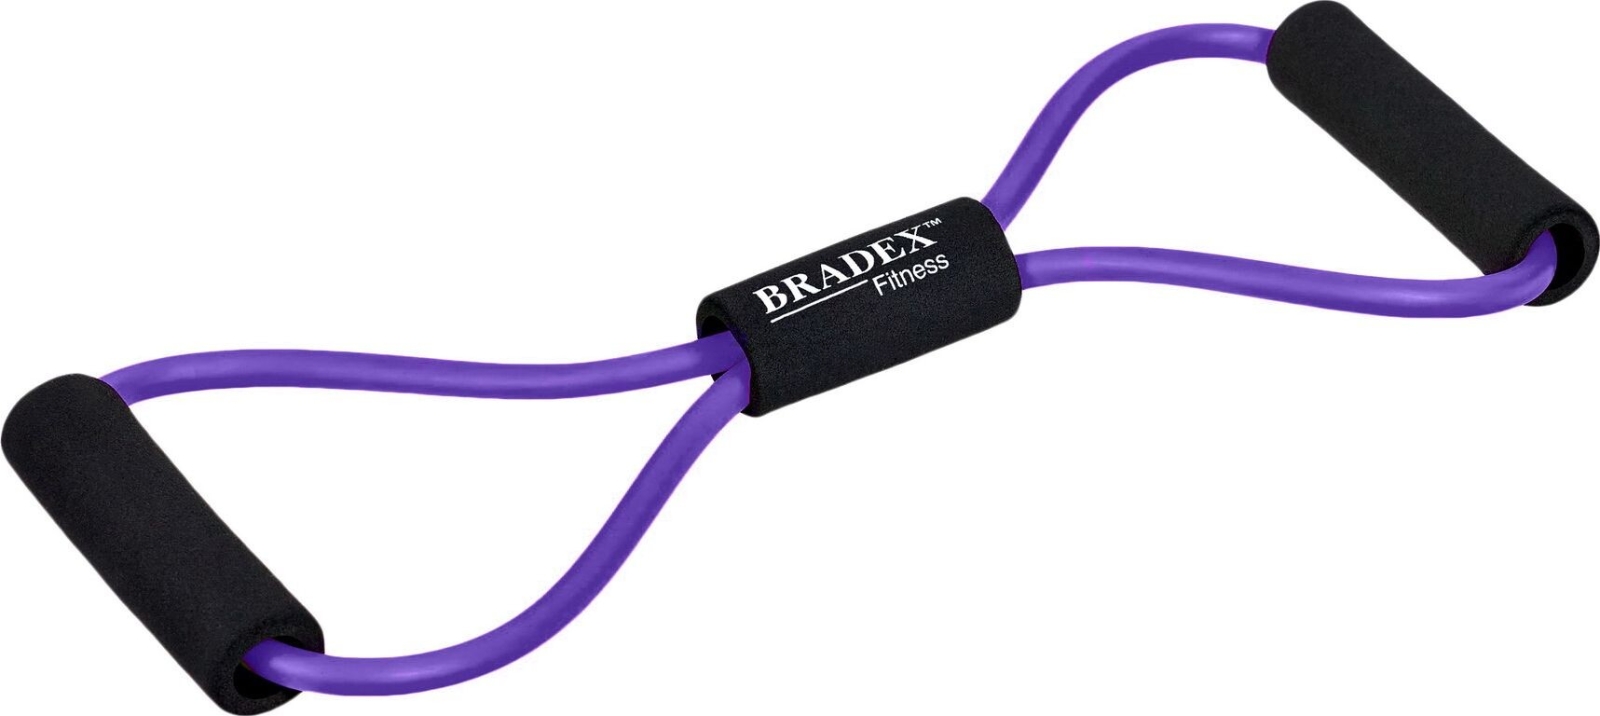 Эспандер-восьмерка BRADEX фиолетовый (SF 0723)